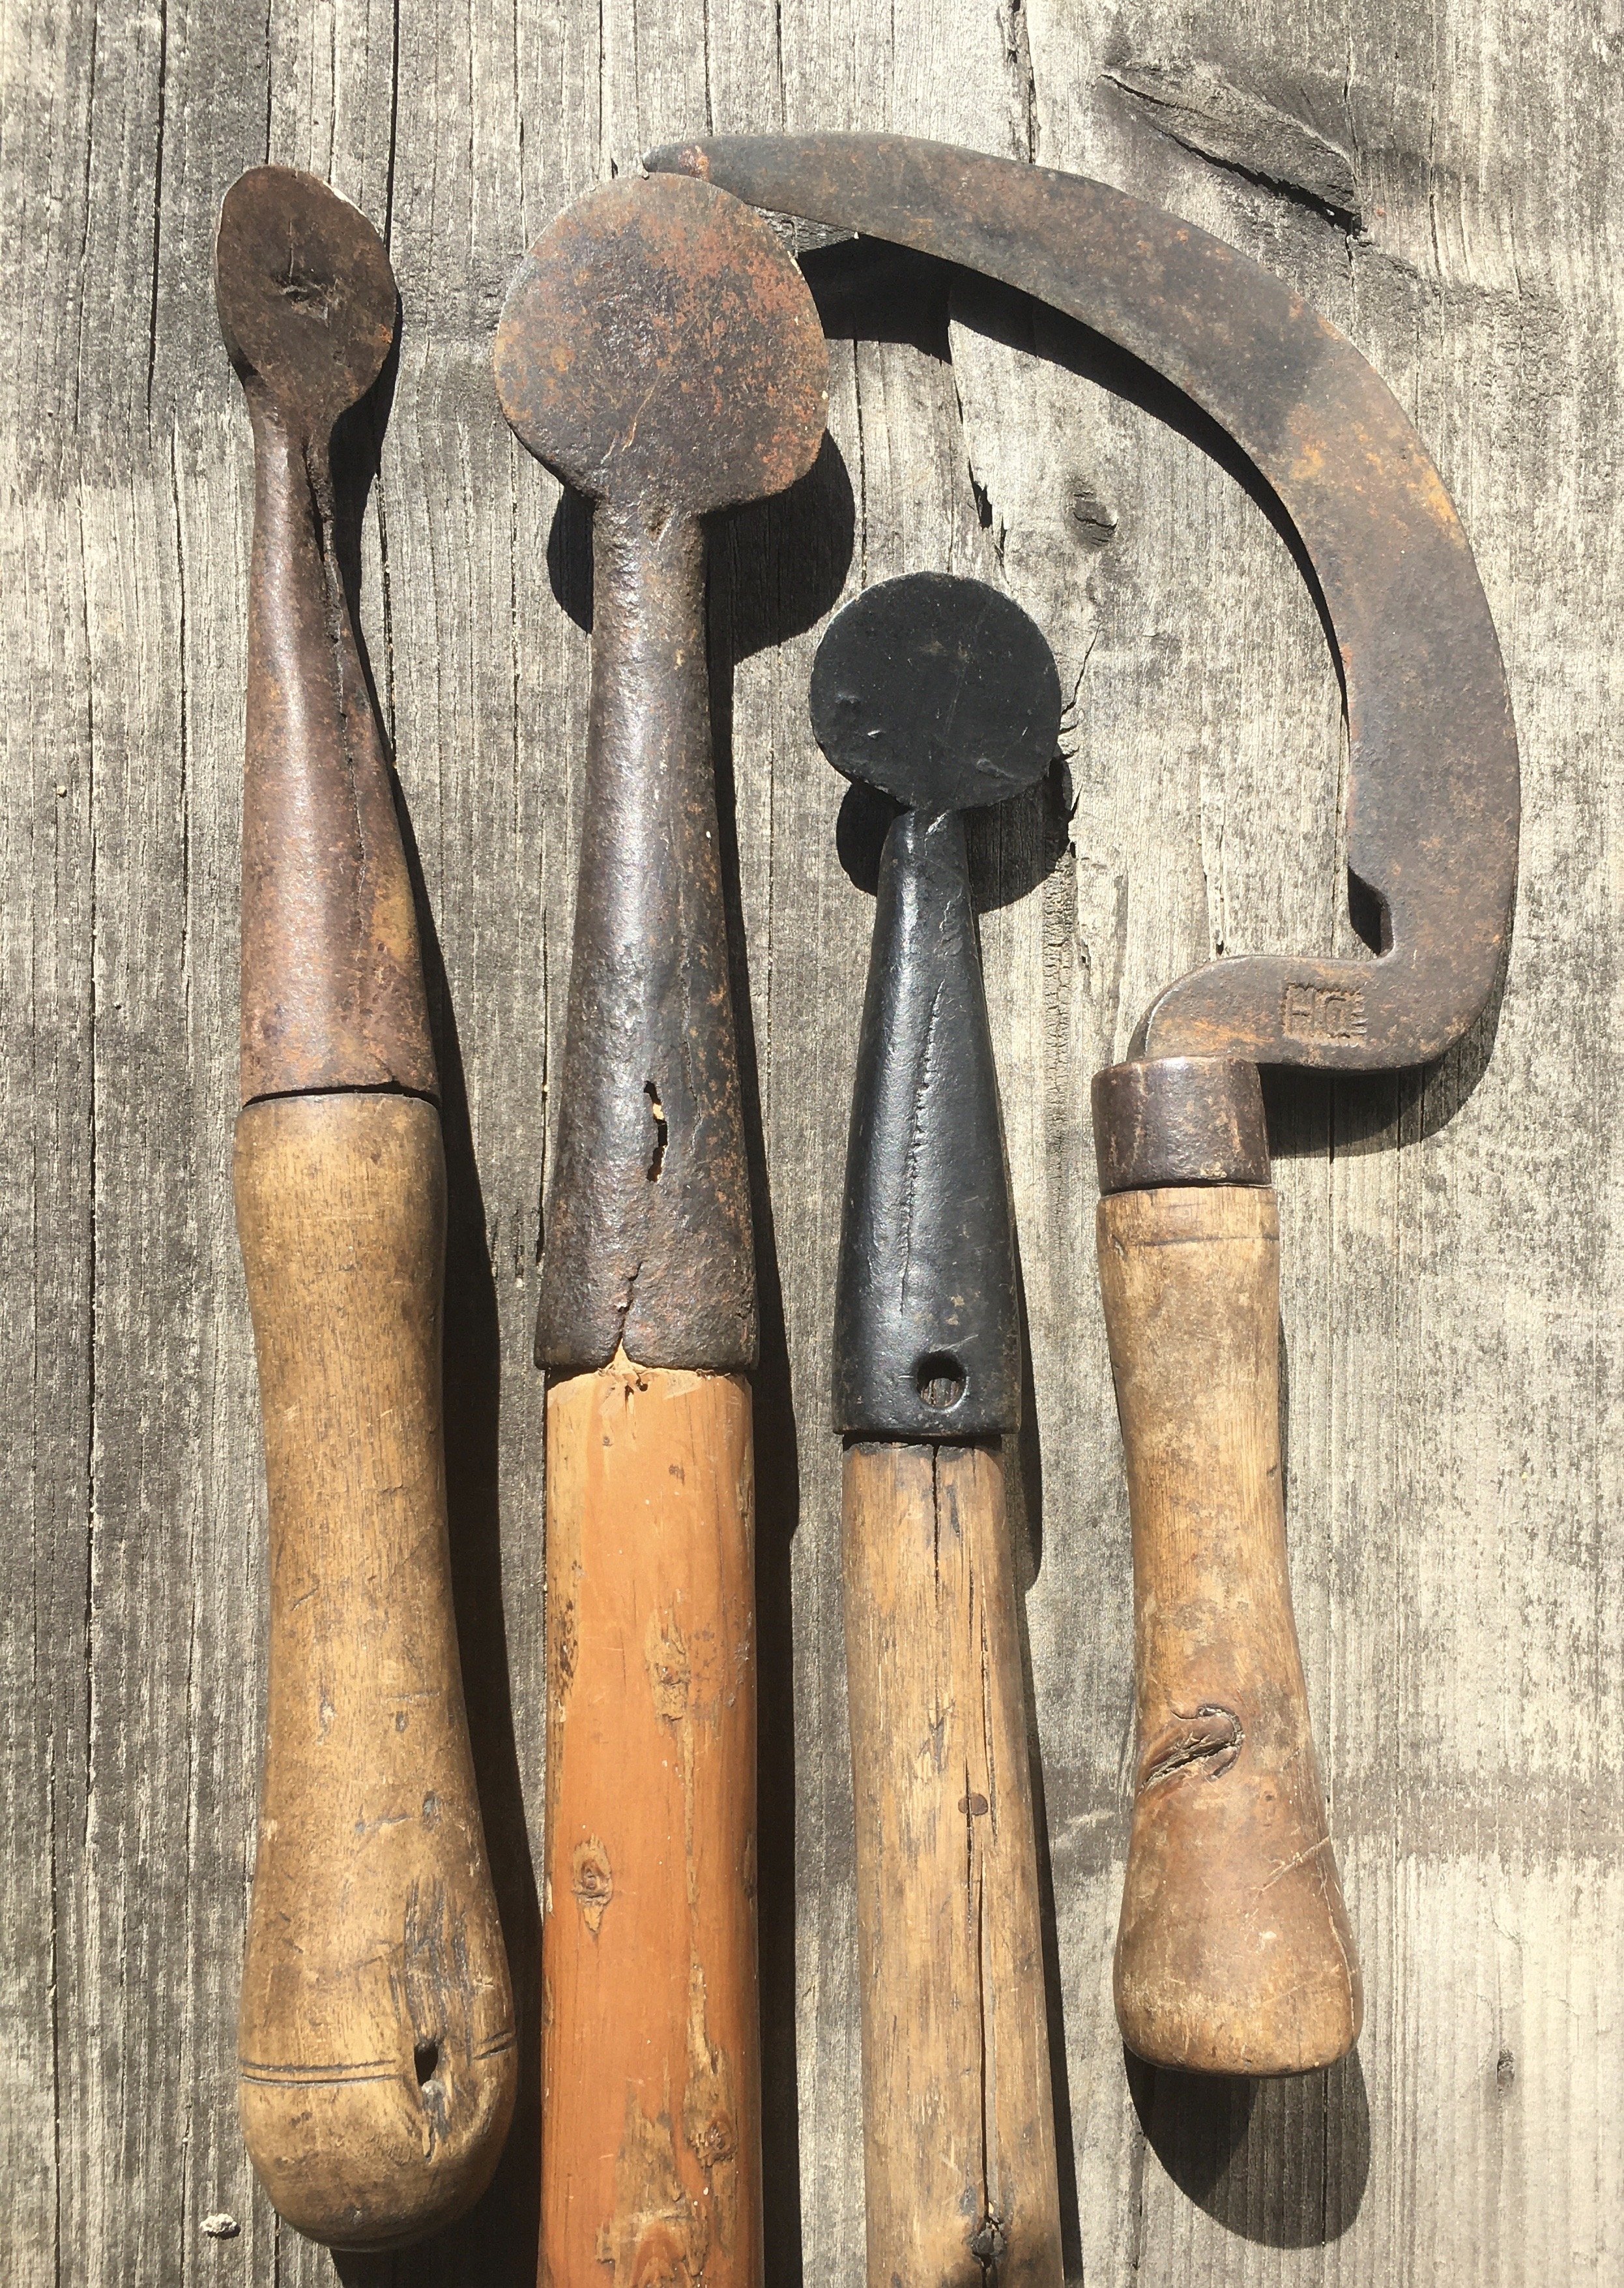 Schällöffel zum Loheschälen (2. Werkzeug von links) (Besucherbergwerk und Bergbaumuseum "Grube Silberhardt" CC BY-NC-SA)